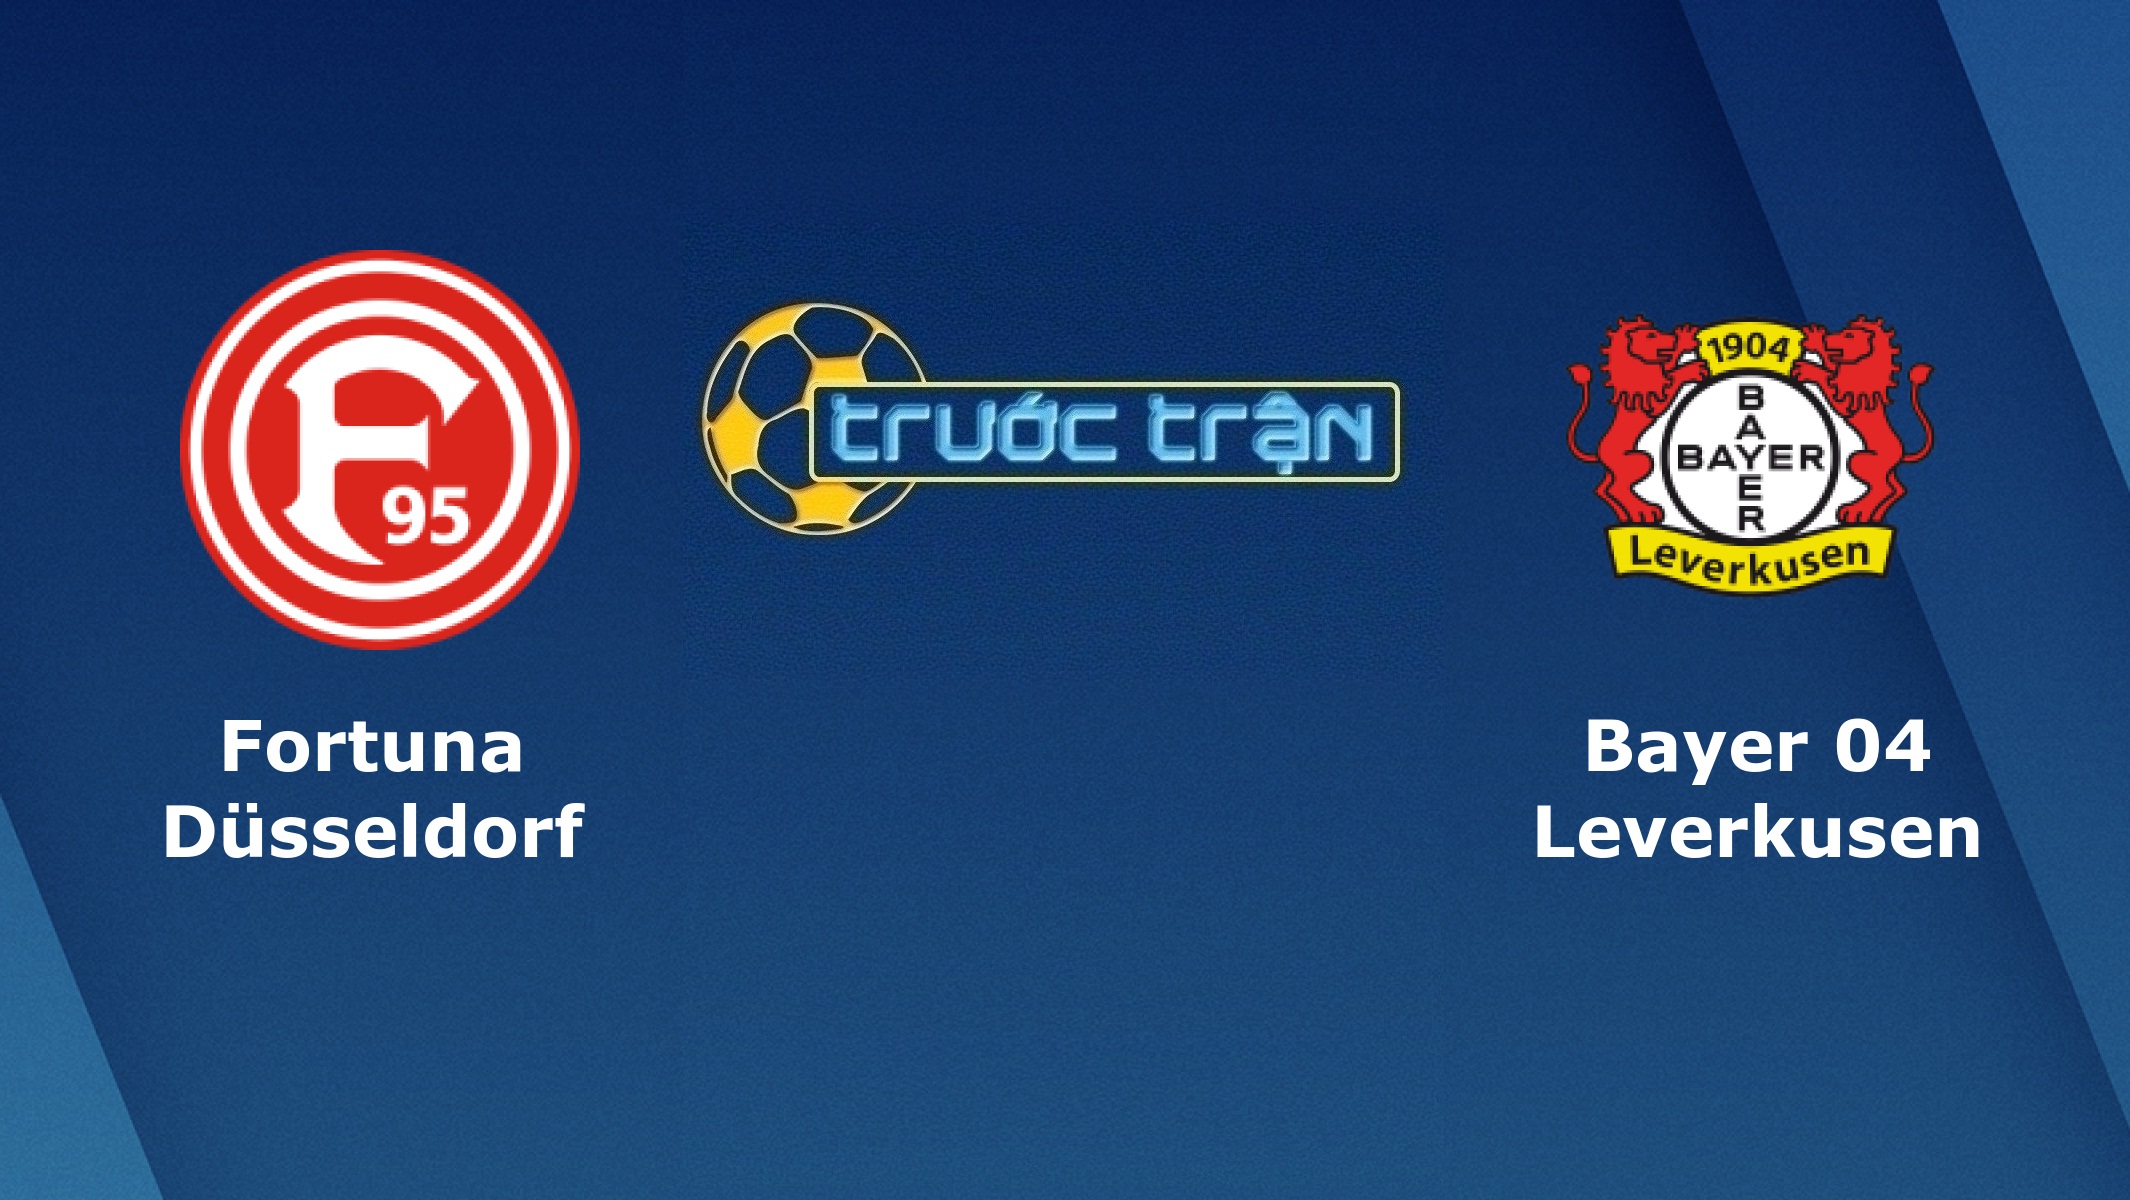 Fortuna Dusseldorf vs Bayer Leverkusen – Tip kèo bóng đá hôm nay – 24/08